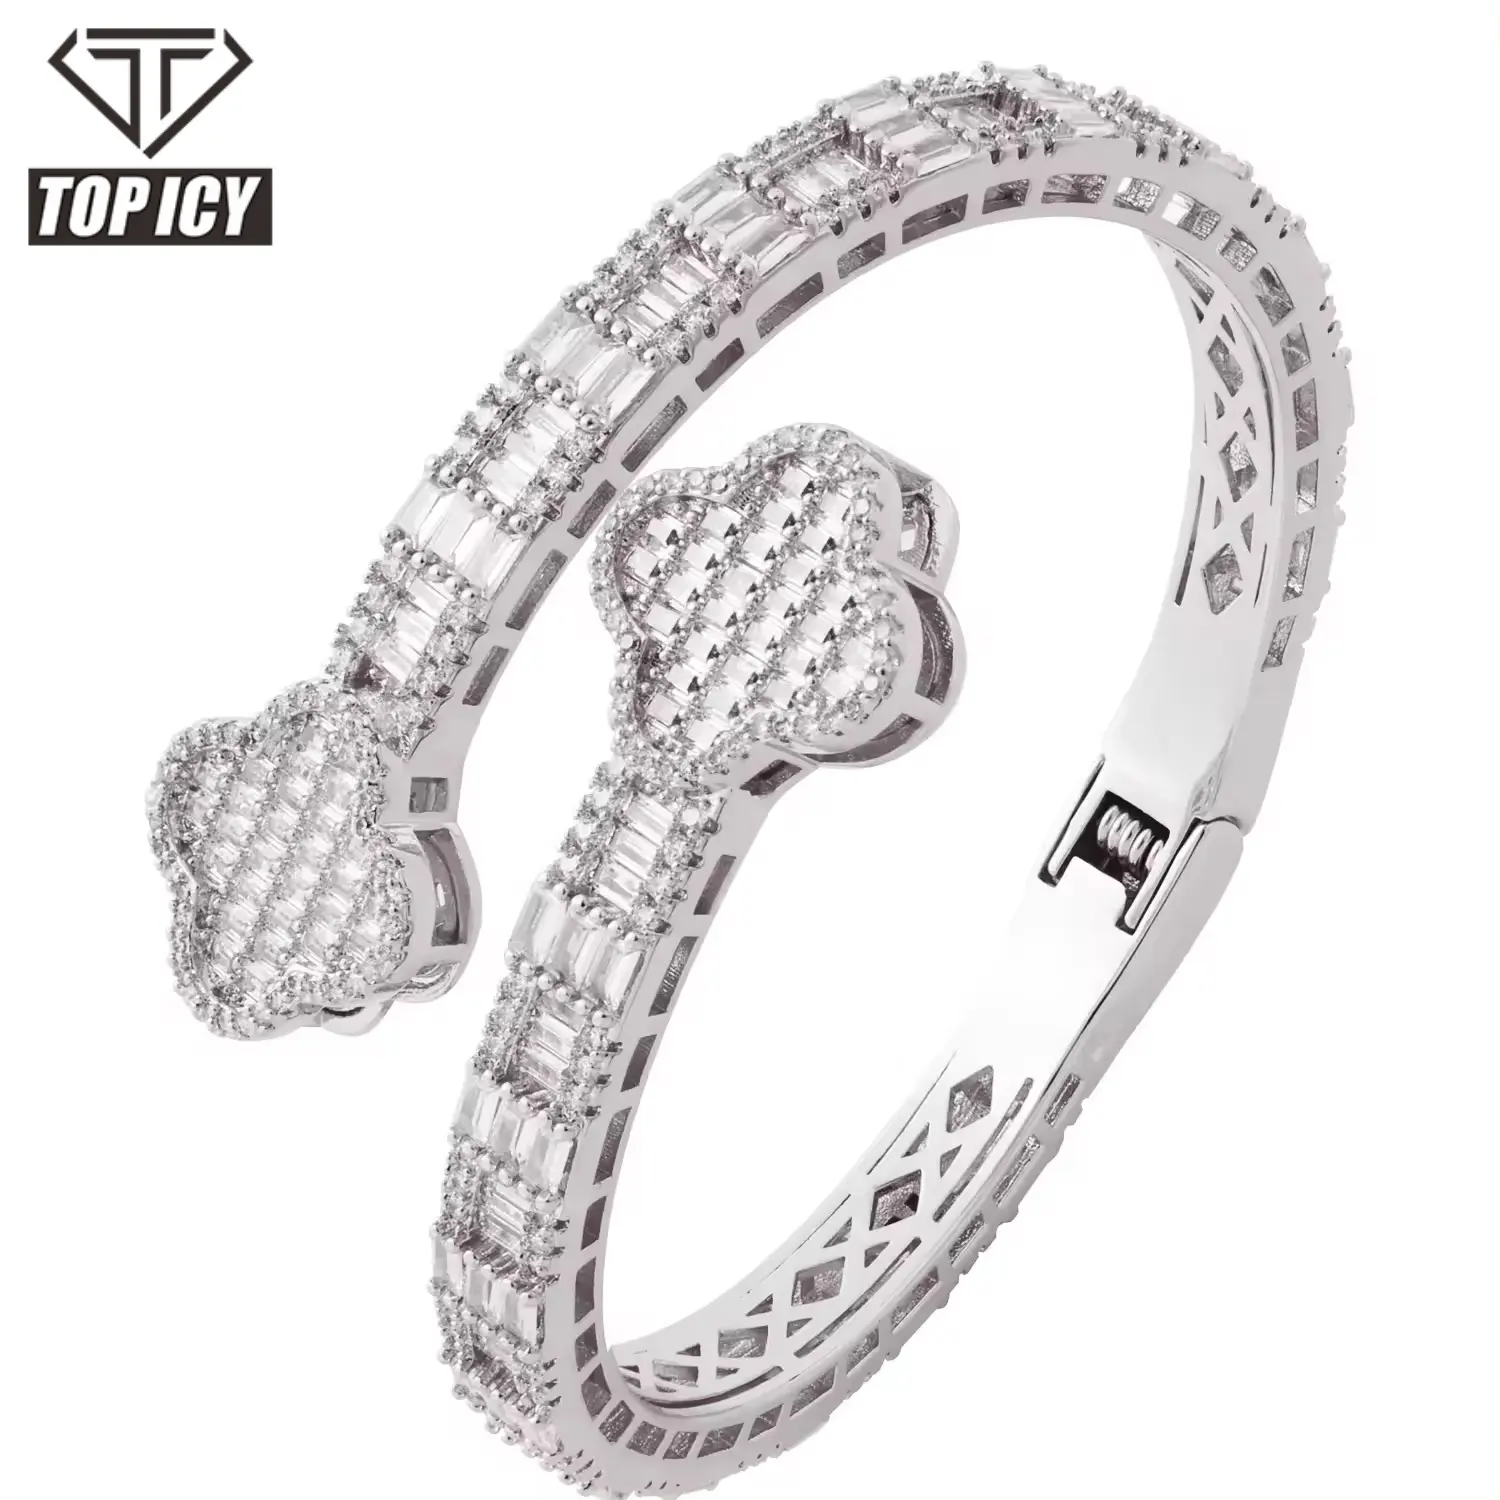 Desain baru mode semanggi perhiasan gelang bangle Hip Hop wanita pria gelang emas perak es keluar perhiasan